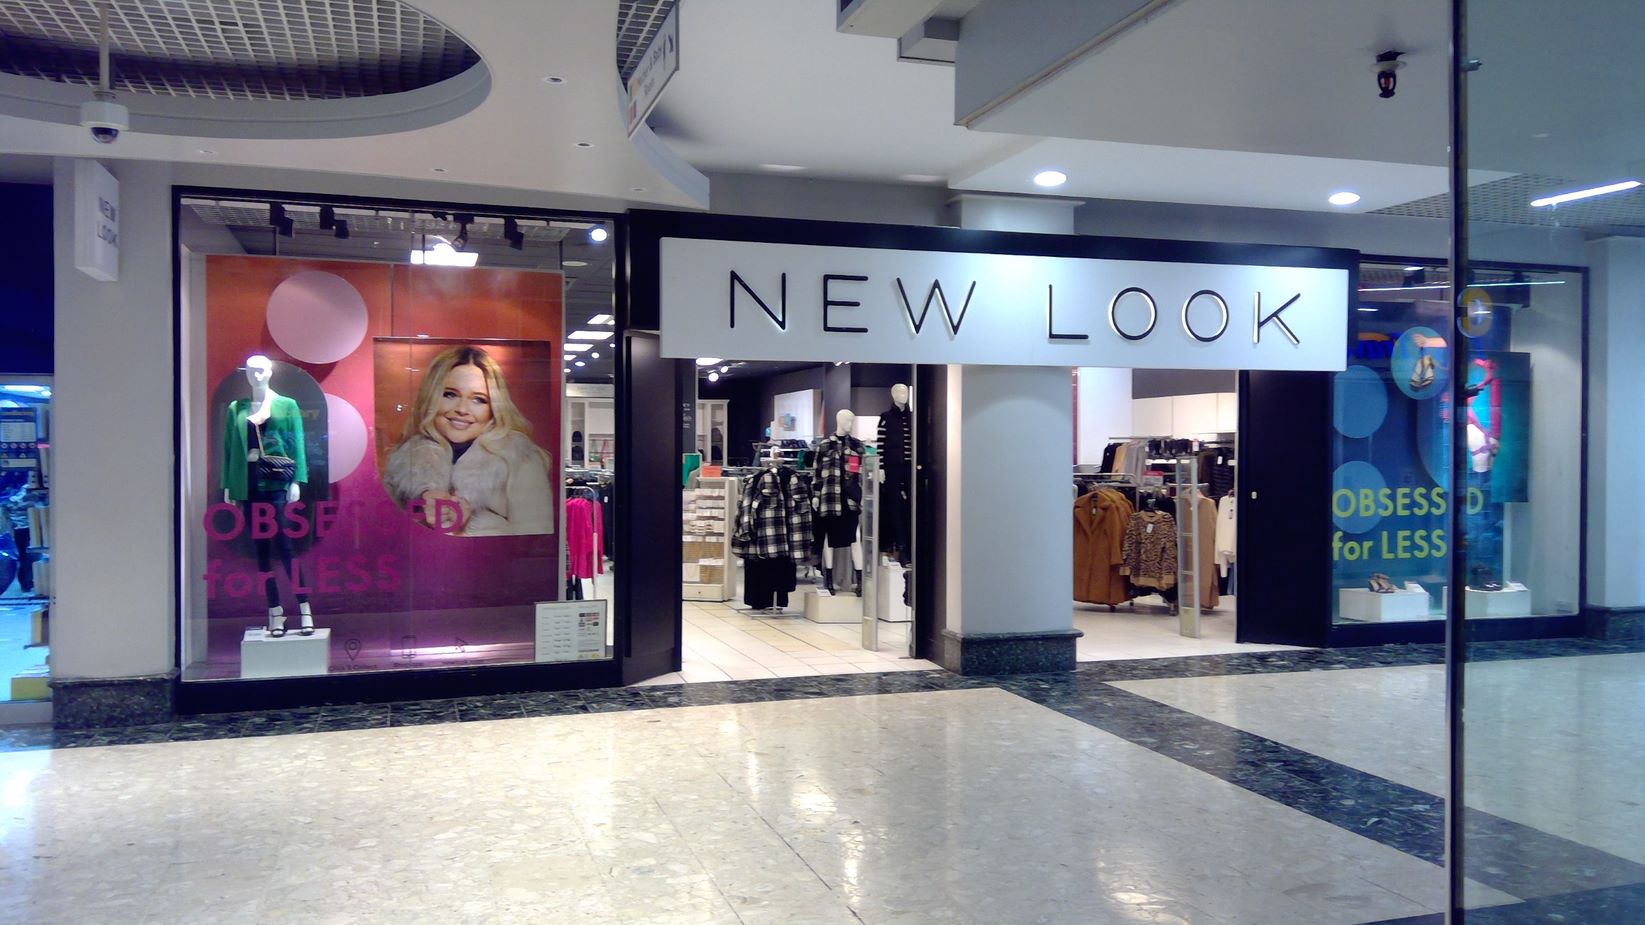 New Look Skelmersdale Store New Look Skelmersdale 01695 559800